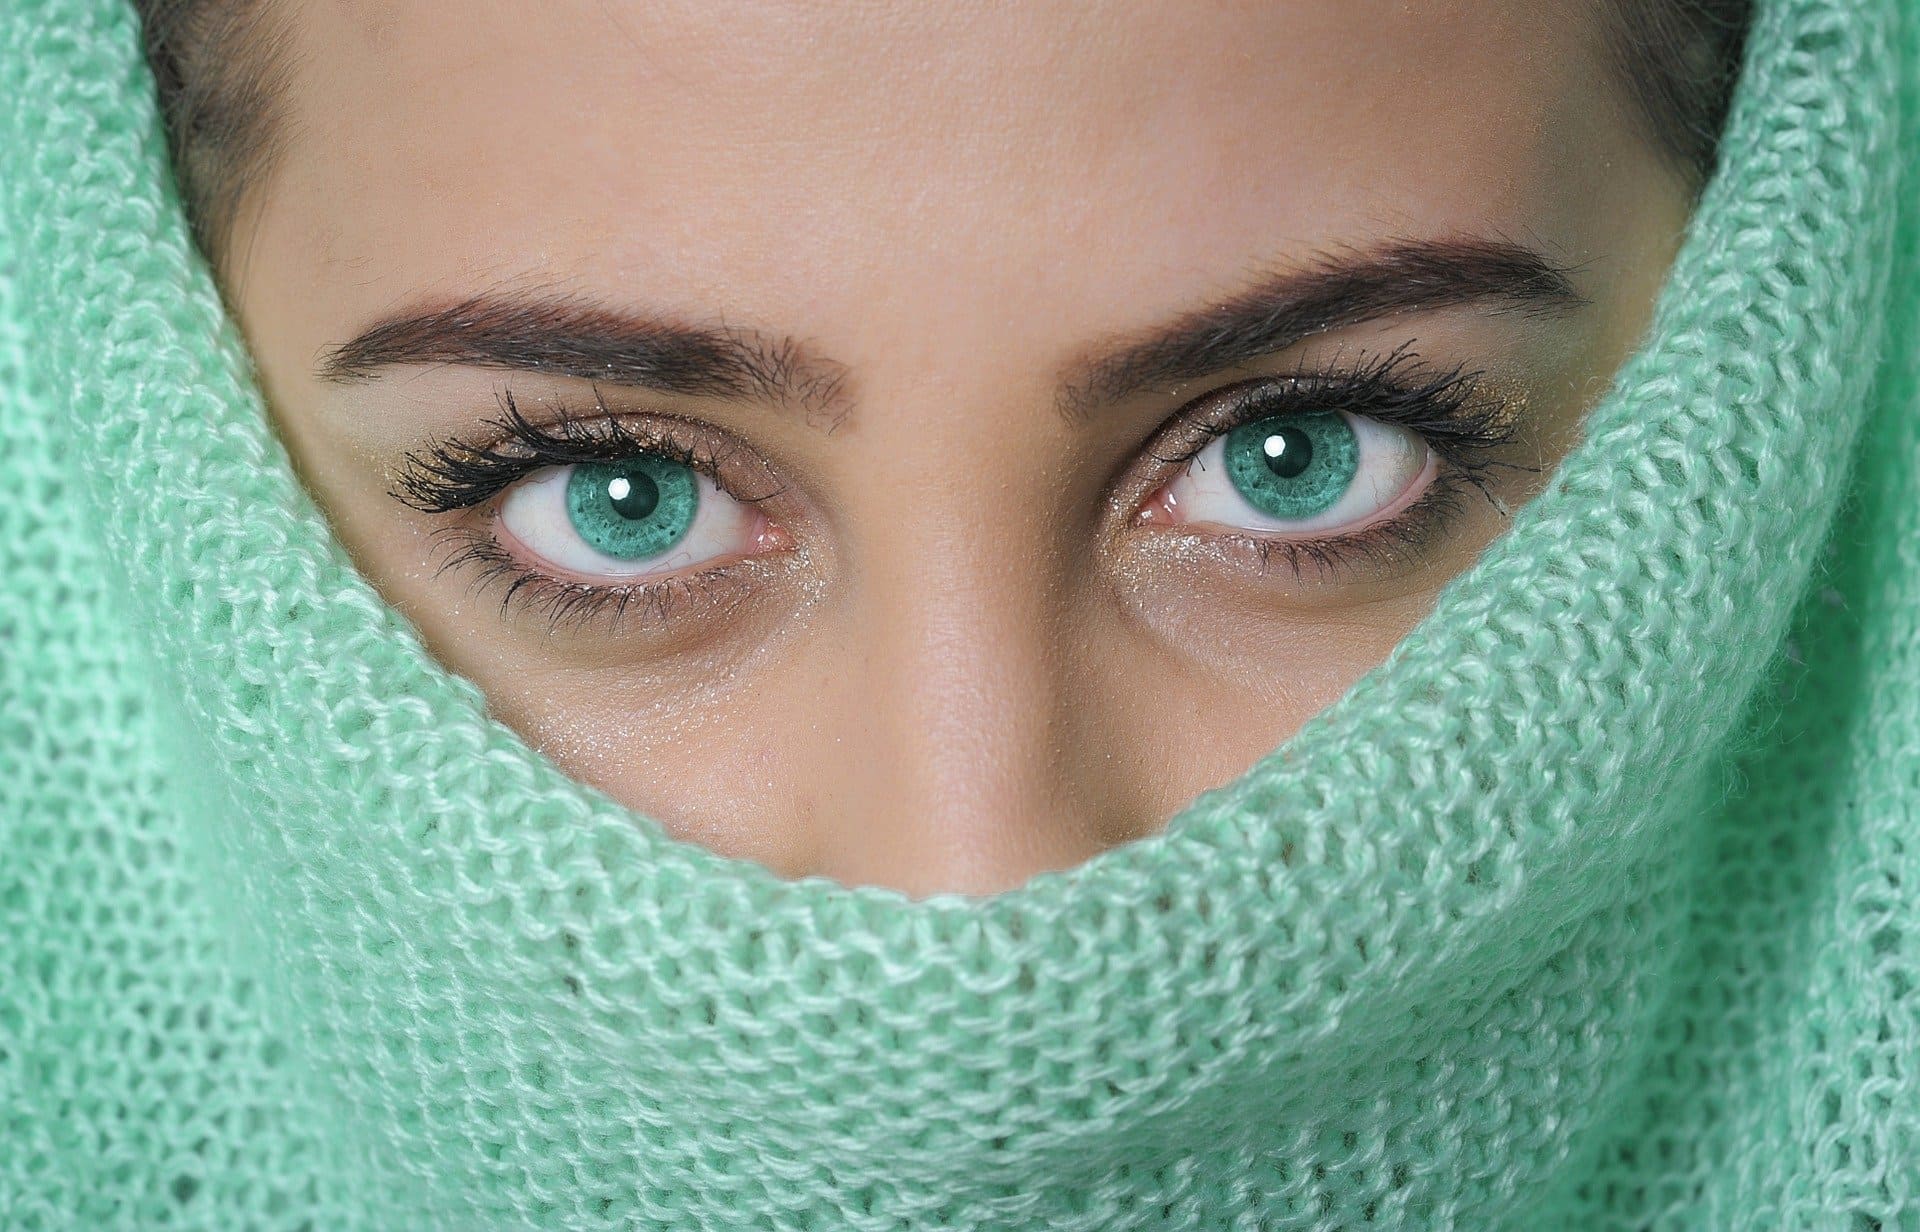 Sonhar com olho verde: 27 significados para diferentes sonhos com olhos